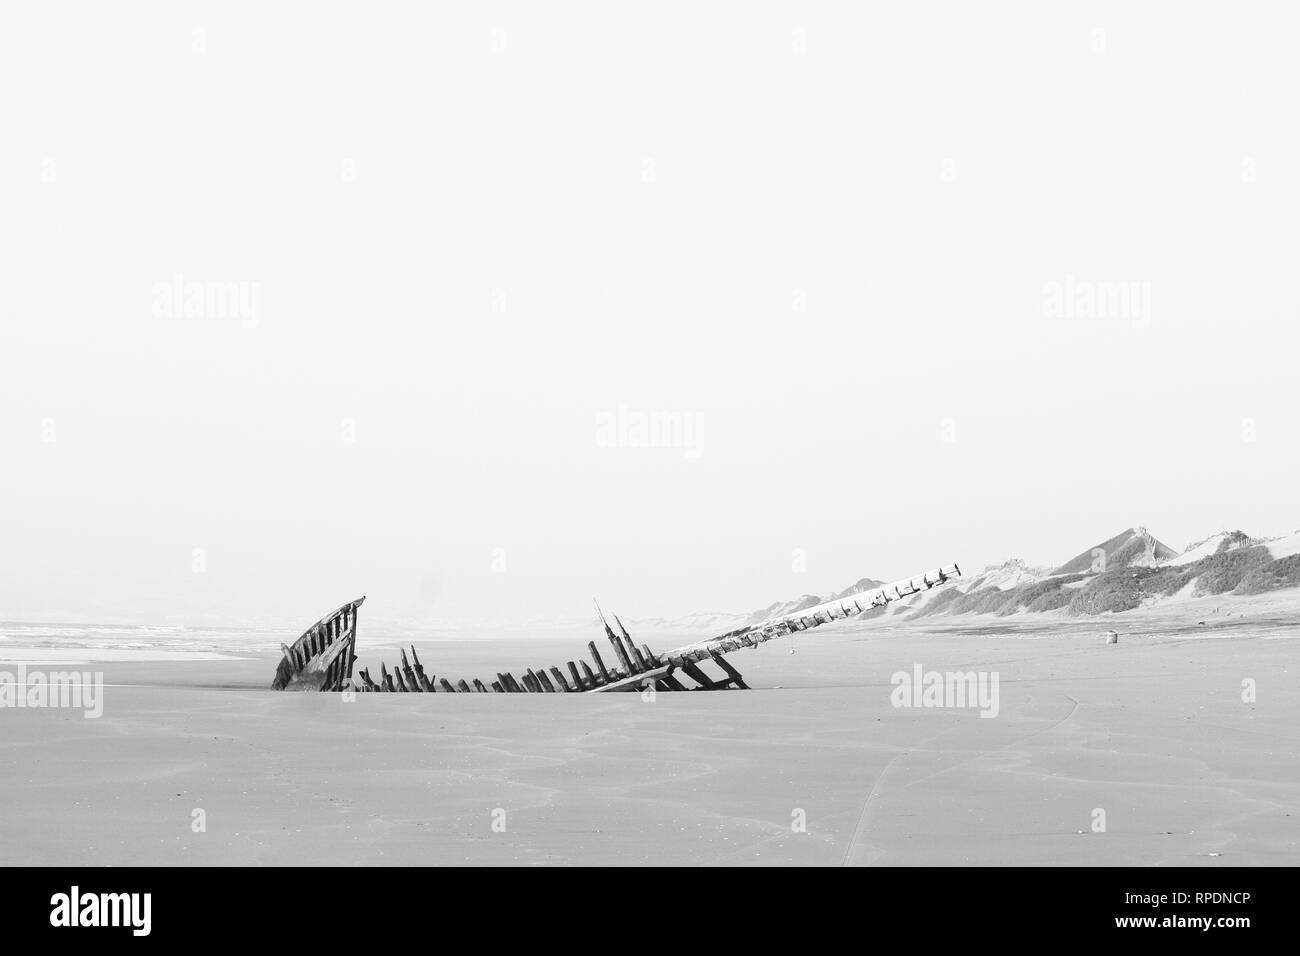 Einfarbig, Schwarz und Weiß, Panorama einer breiten leeren Strand, Atlantik, hölzerne Schiffswrack, verlassenen Boot. Einsamkeit seascape Hintergrund. Stockfoto